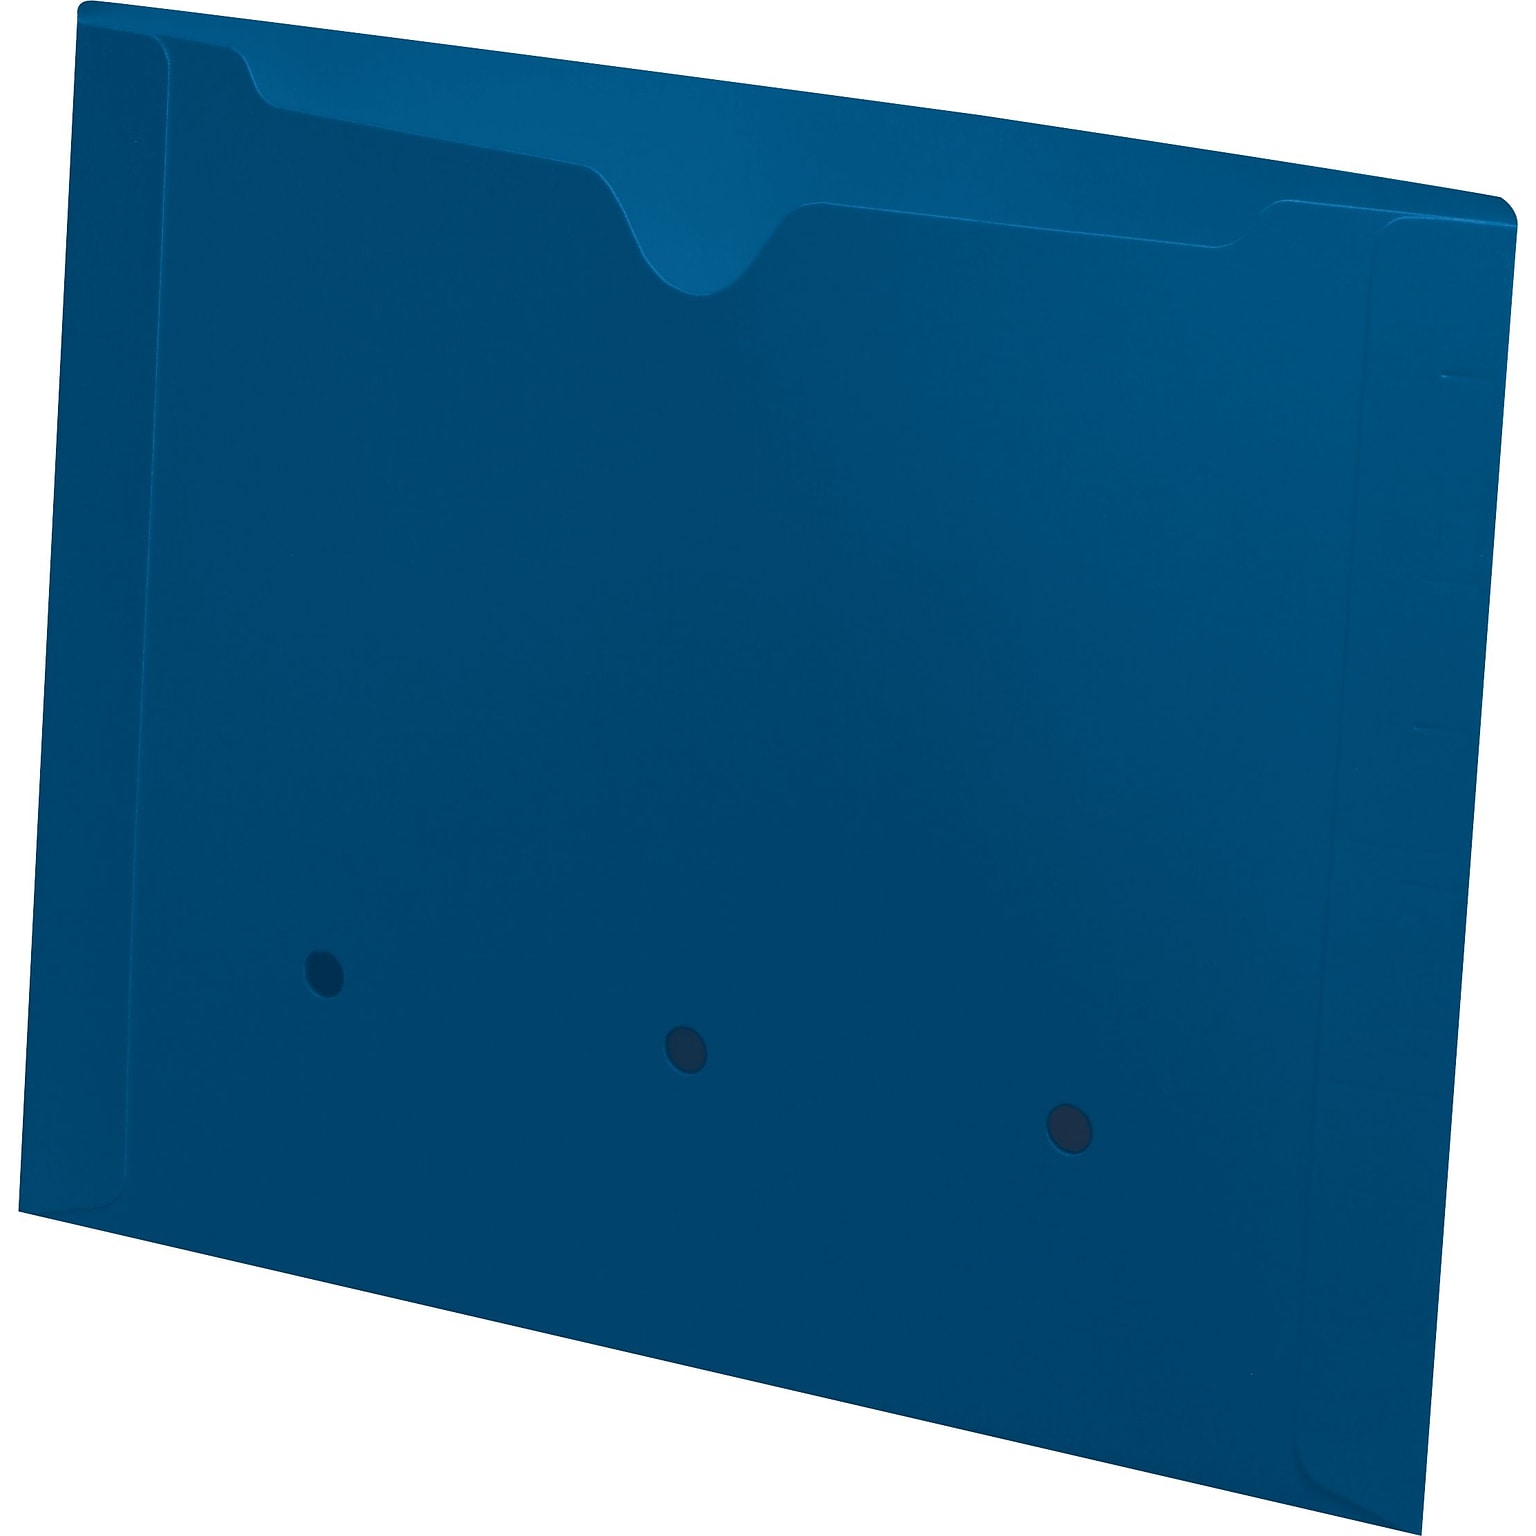 Medical Arts Press®  File Pocket, Letter Size, Blue, 50/Box (52394BE)